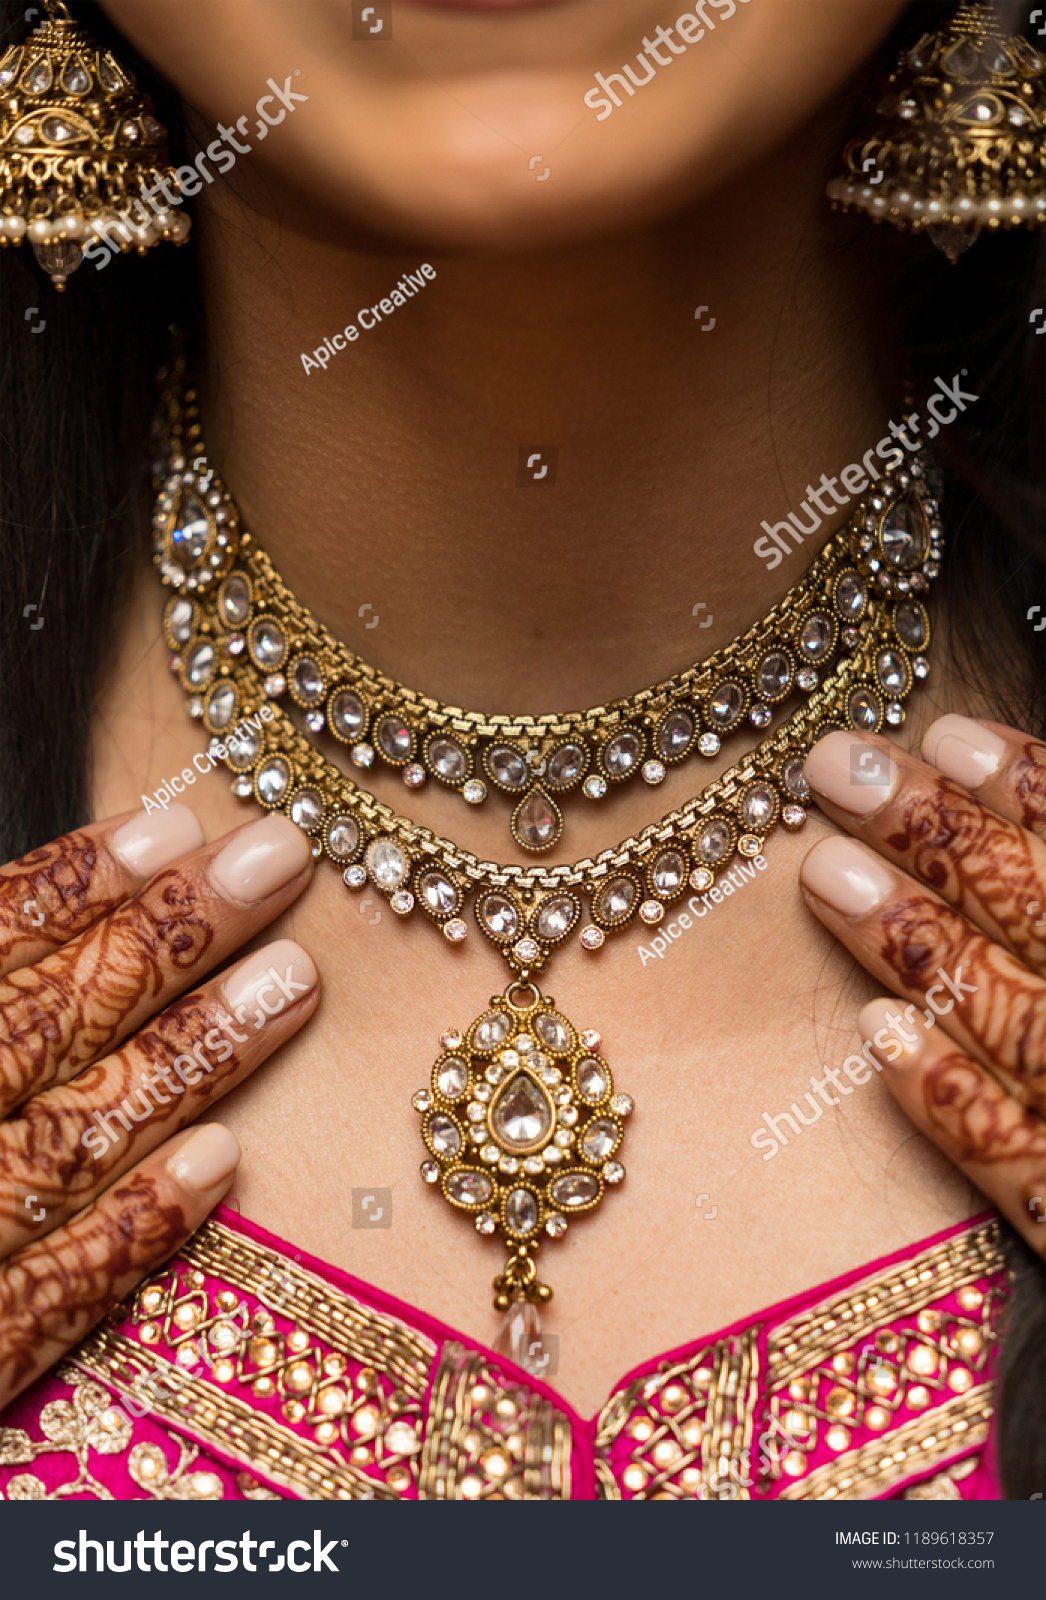 Pakistani Indian bridal showing wedding kundan necklace jewelry #1189618357